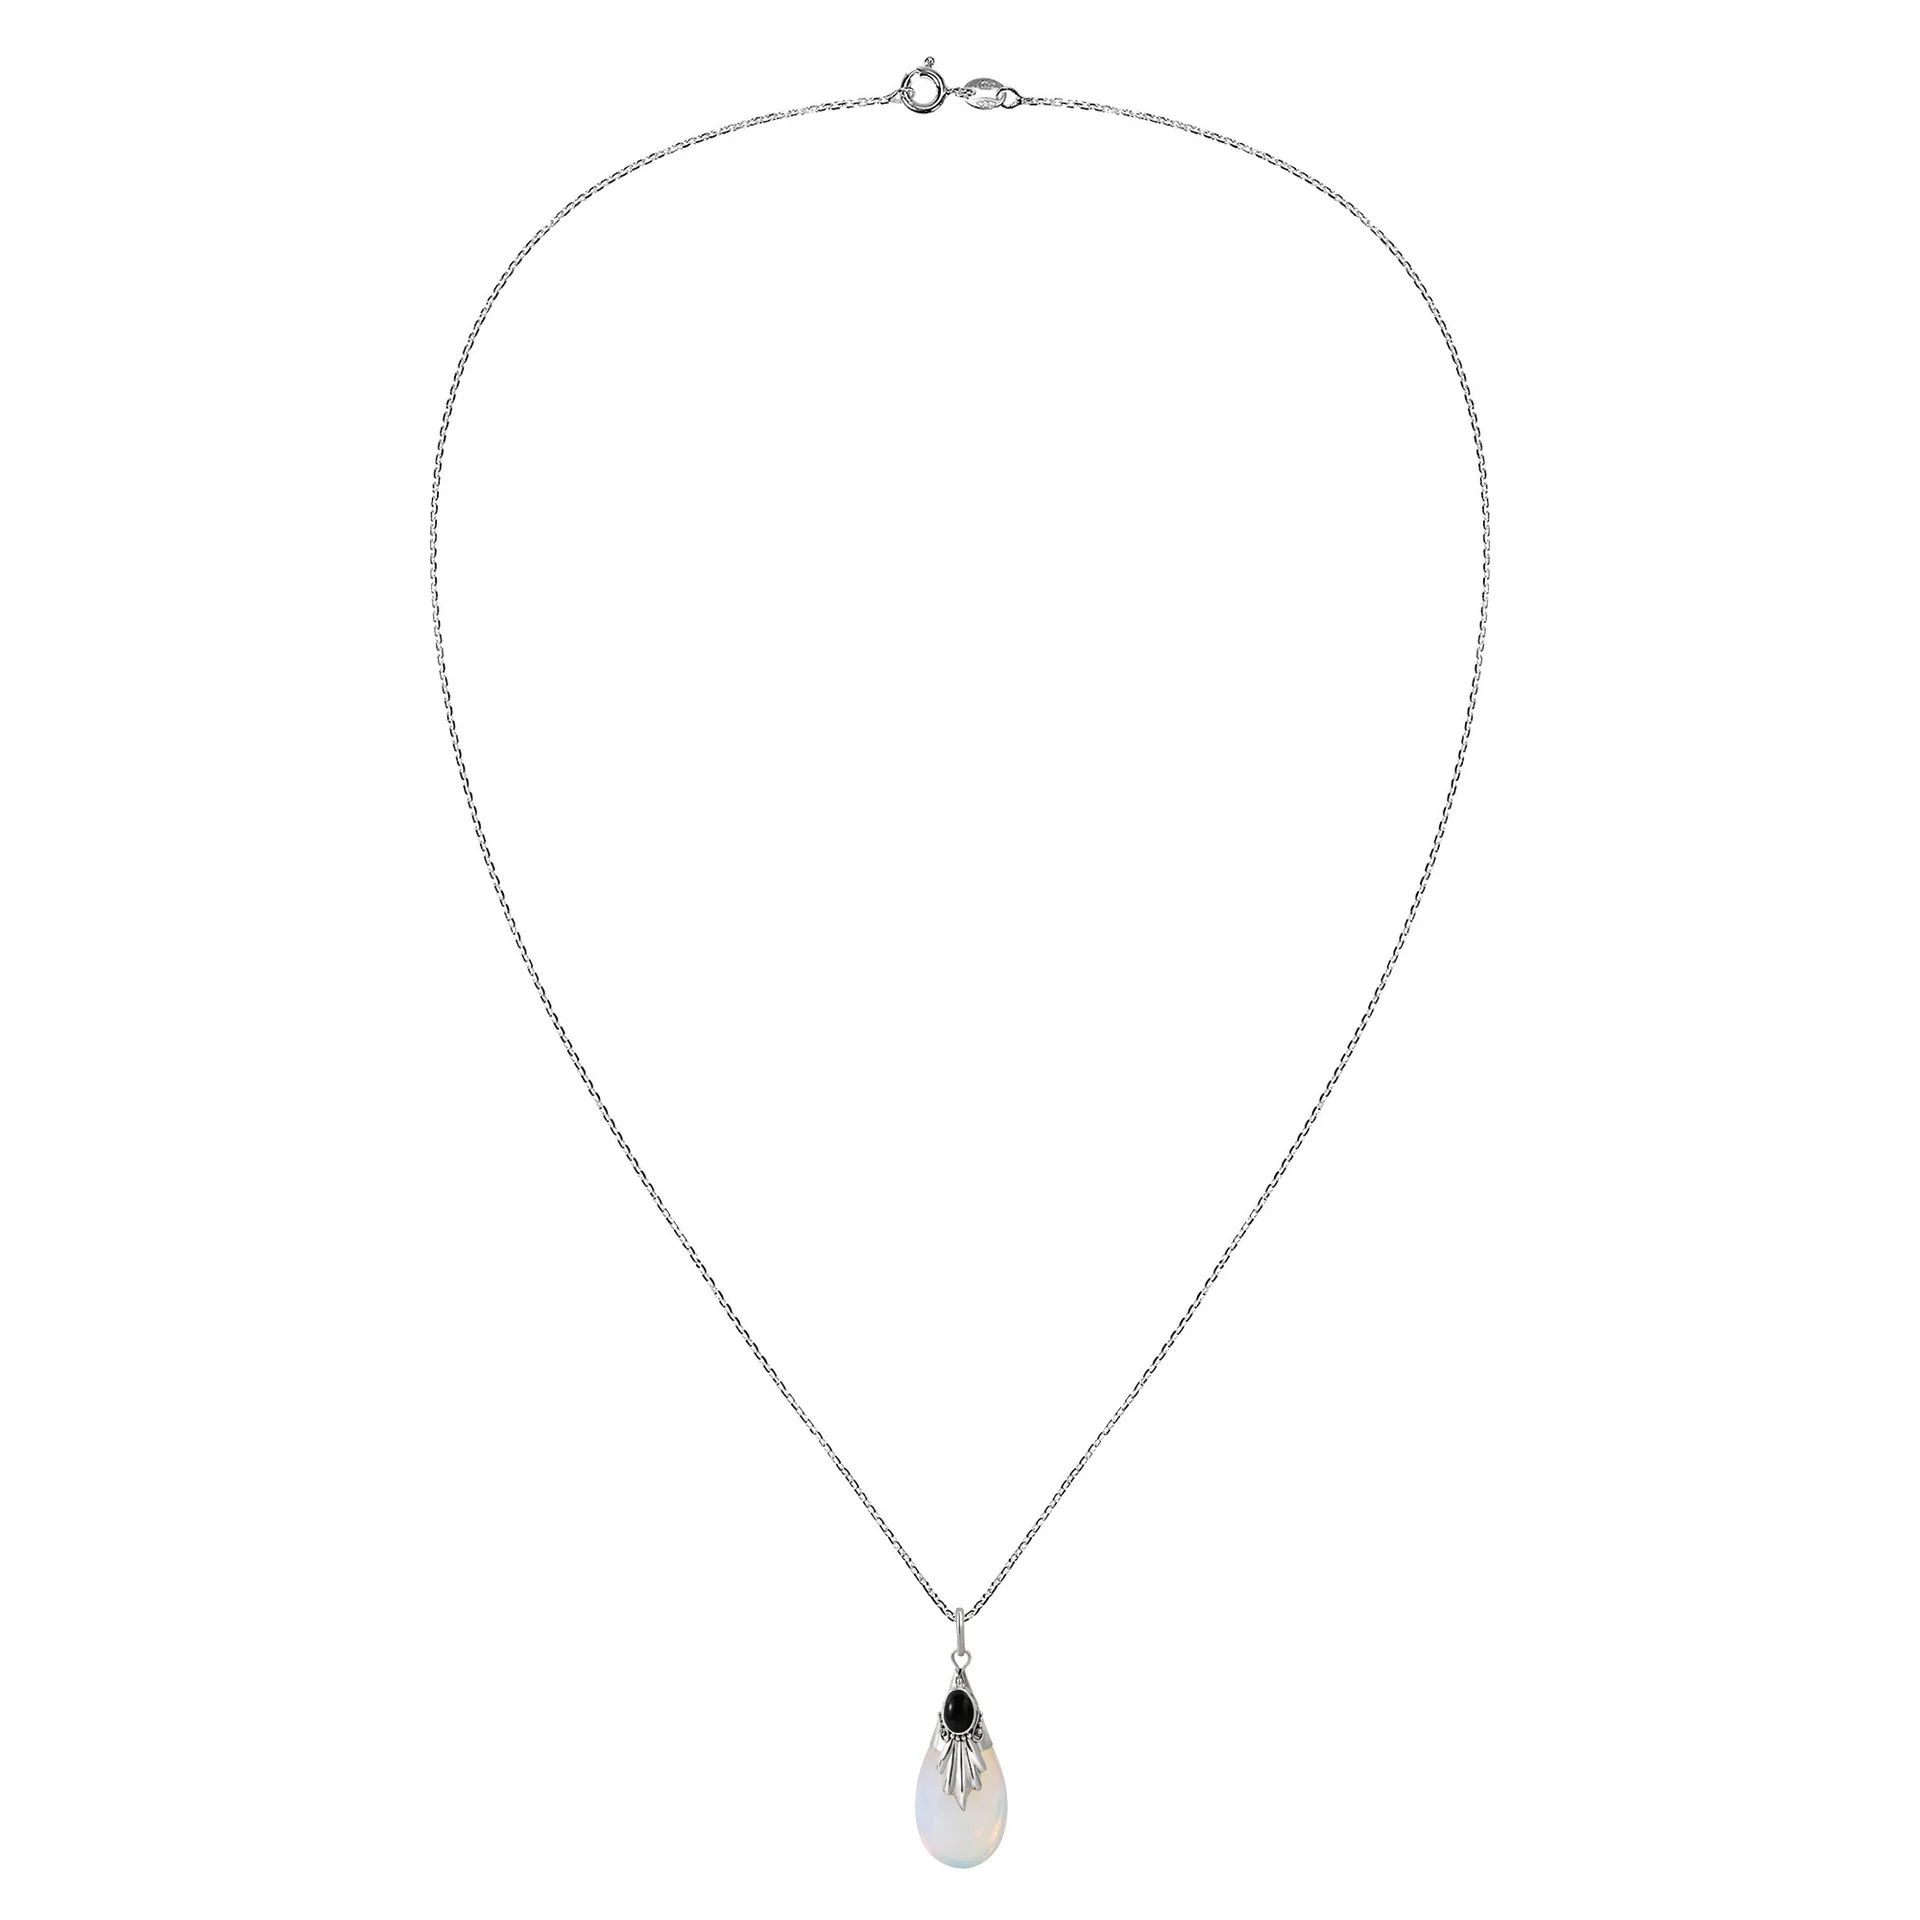 Дизайн распродажа слеза кулон из лунного камня ожерелья для Для женщин 3 цвета Циркон Белого Золота Цвет подарок Модные украшения подарки